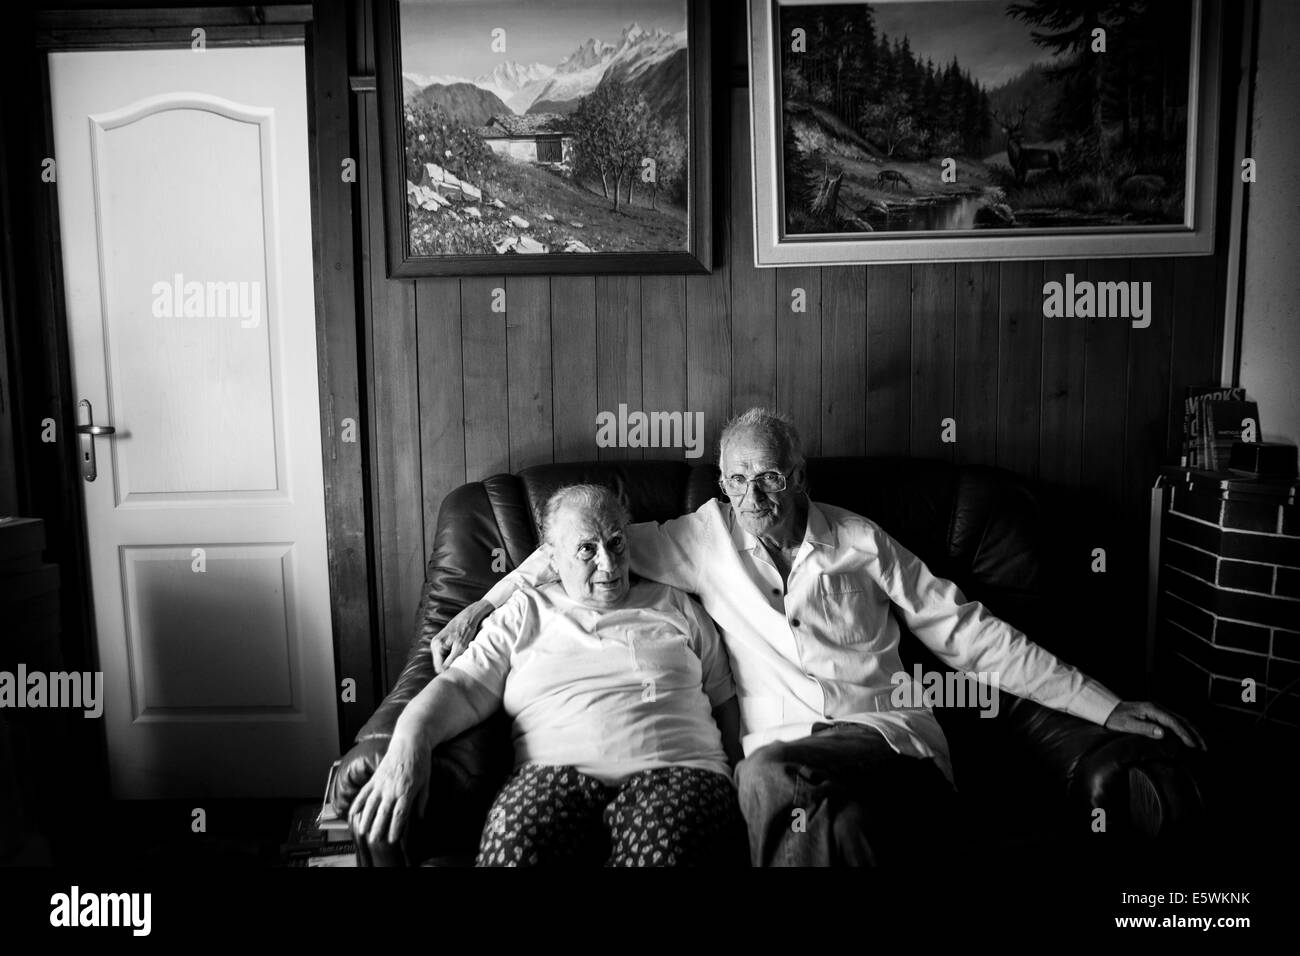 Elderly couple indoors Stock Photo